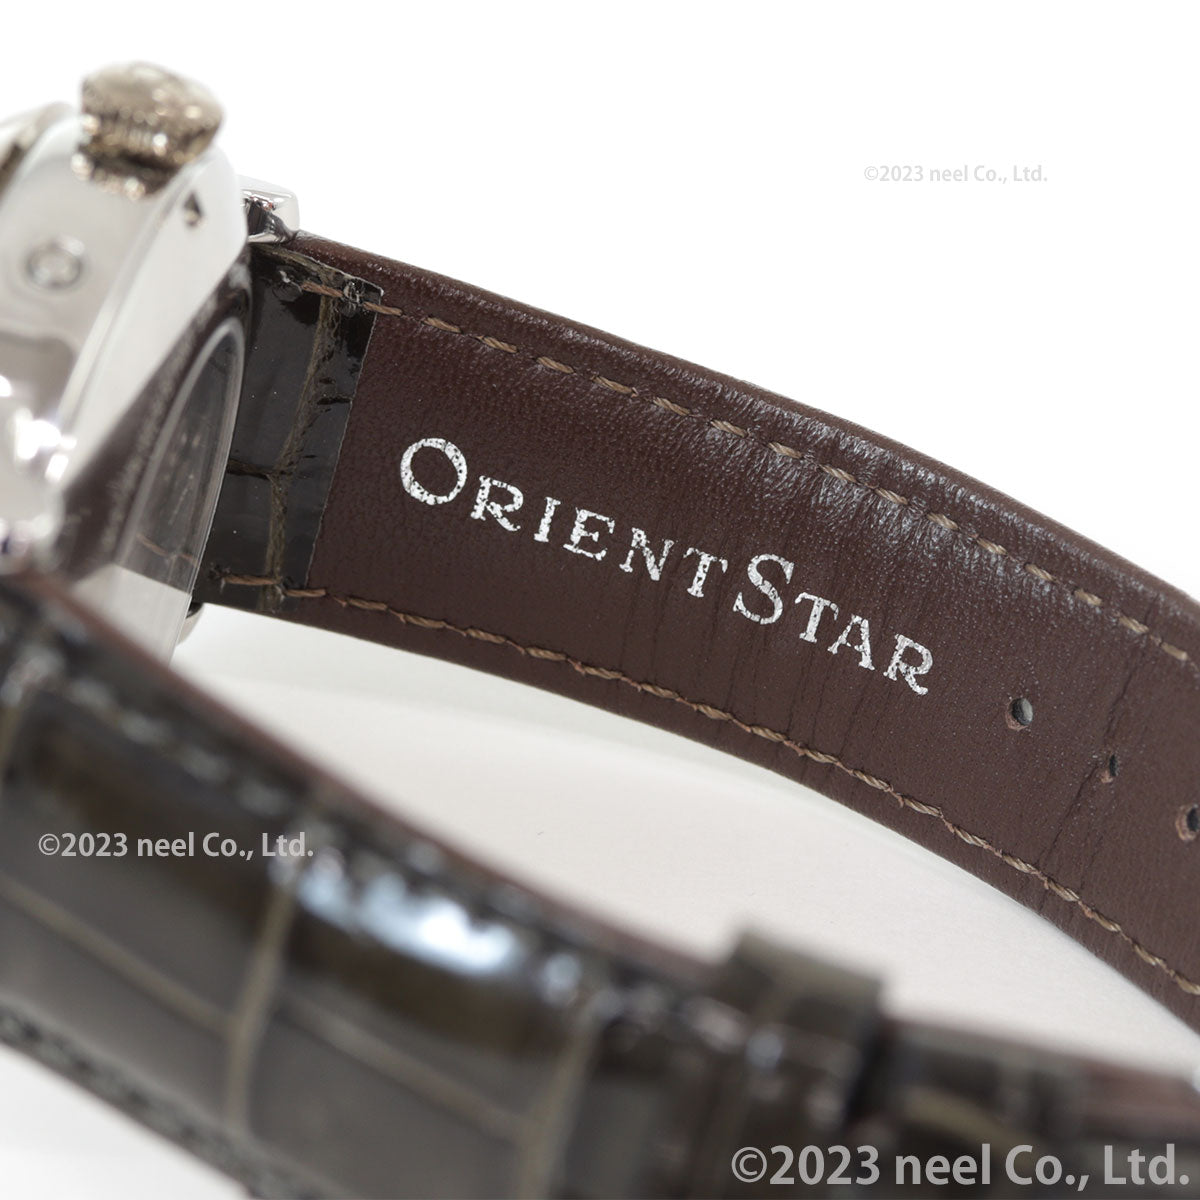 オリエントスター ORIENT STAR M45 F7 メカニカルムーンフェイズ 限定モデル 腕時計 メンズ 自動巻き 機械式 RK-AY0120A